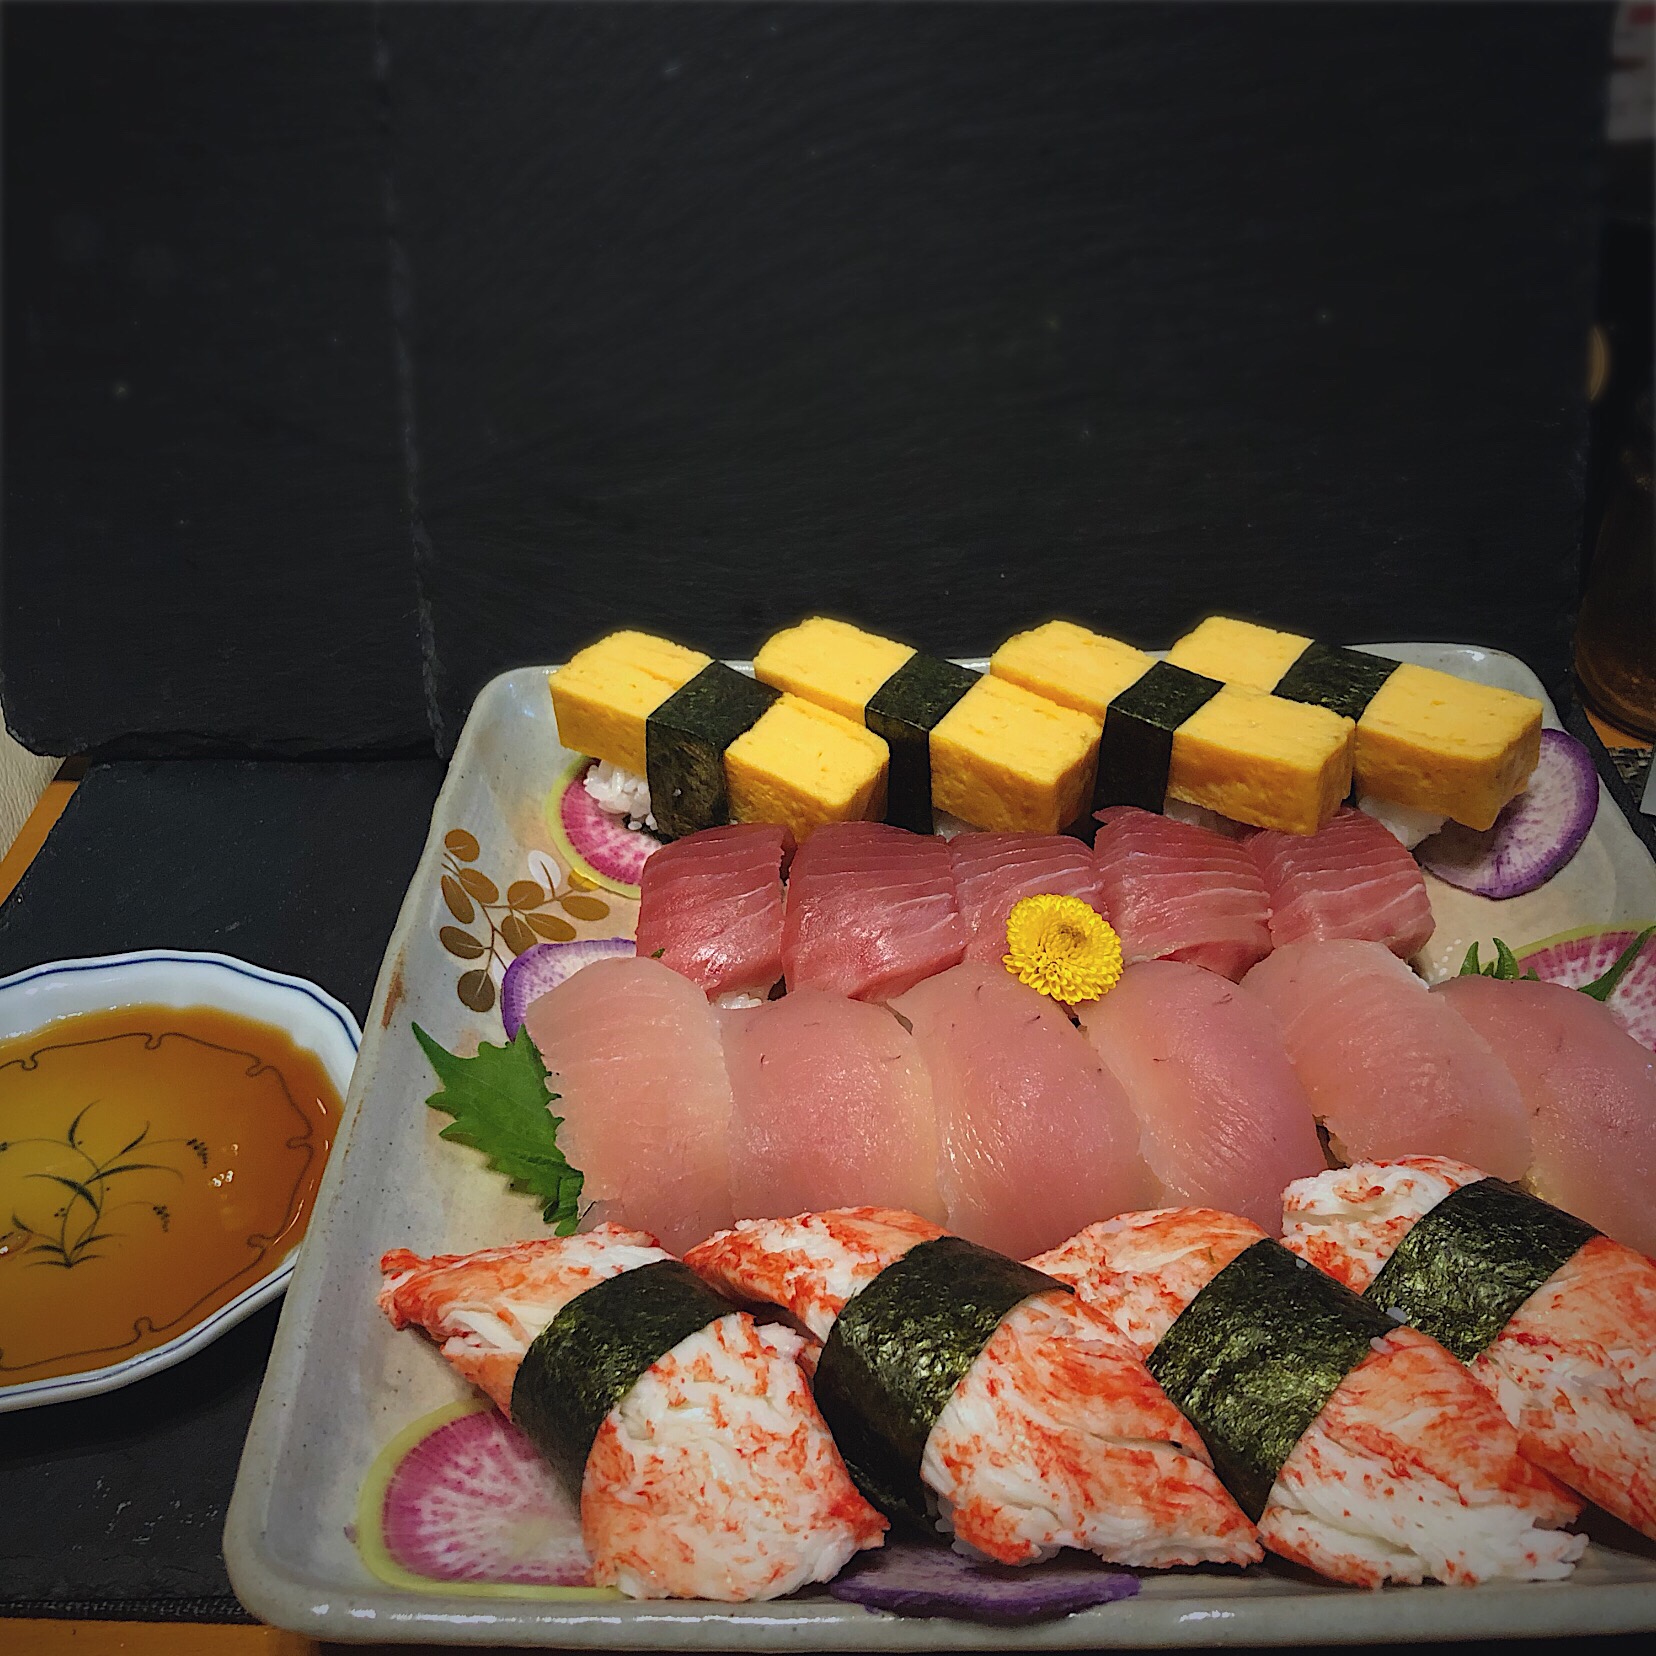 Takayukiさんの料理 #しょうゆ麹 を作ります♪
丸大豆しょうゆ&#米こうじ でお寿司を頂く